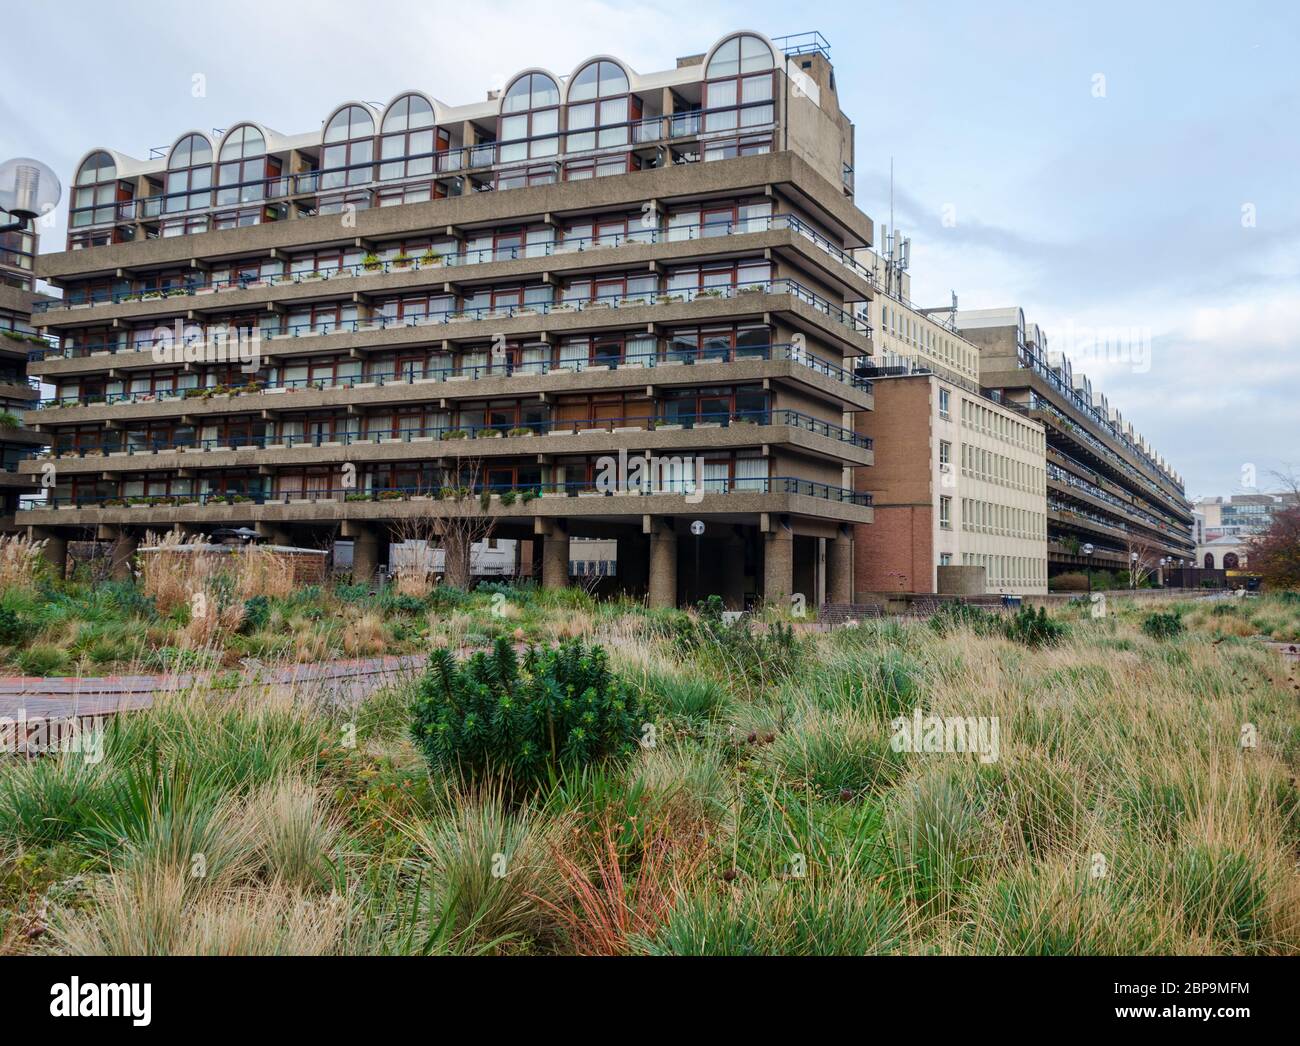 Londra, Regno Unito: 2 dicembre 2017: La tenuta Barbican è un esempio importante di architettura brutalista britannica. Originariamente fu costruito come casa in affitto per m. Foto Stock